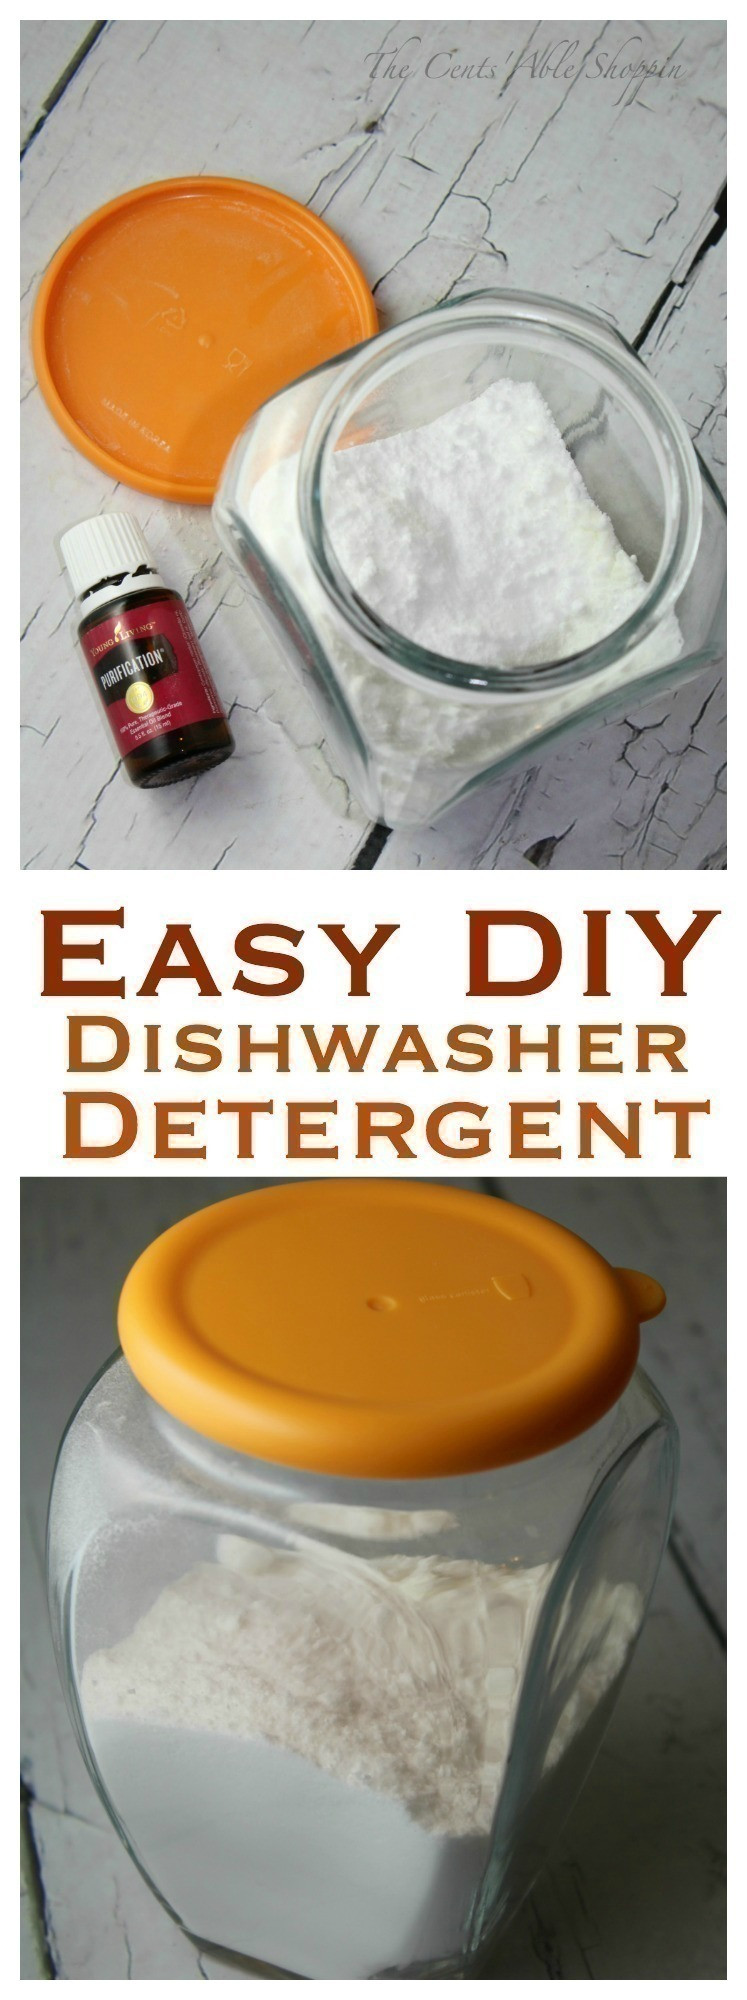 Best ideas about Dishwasher Detergent DIY
. Save or Pin Easy DIY Homemade Dishwasher Detergent Now.